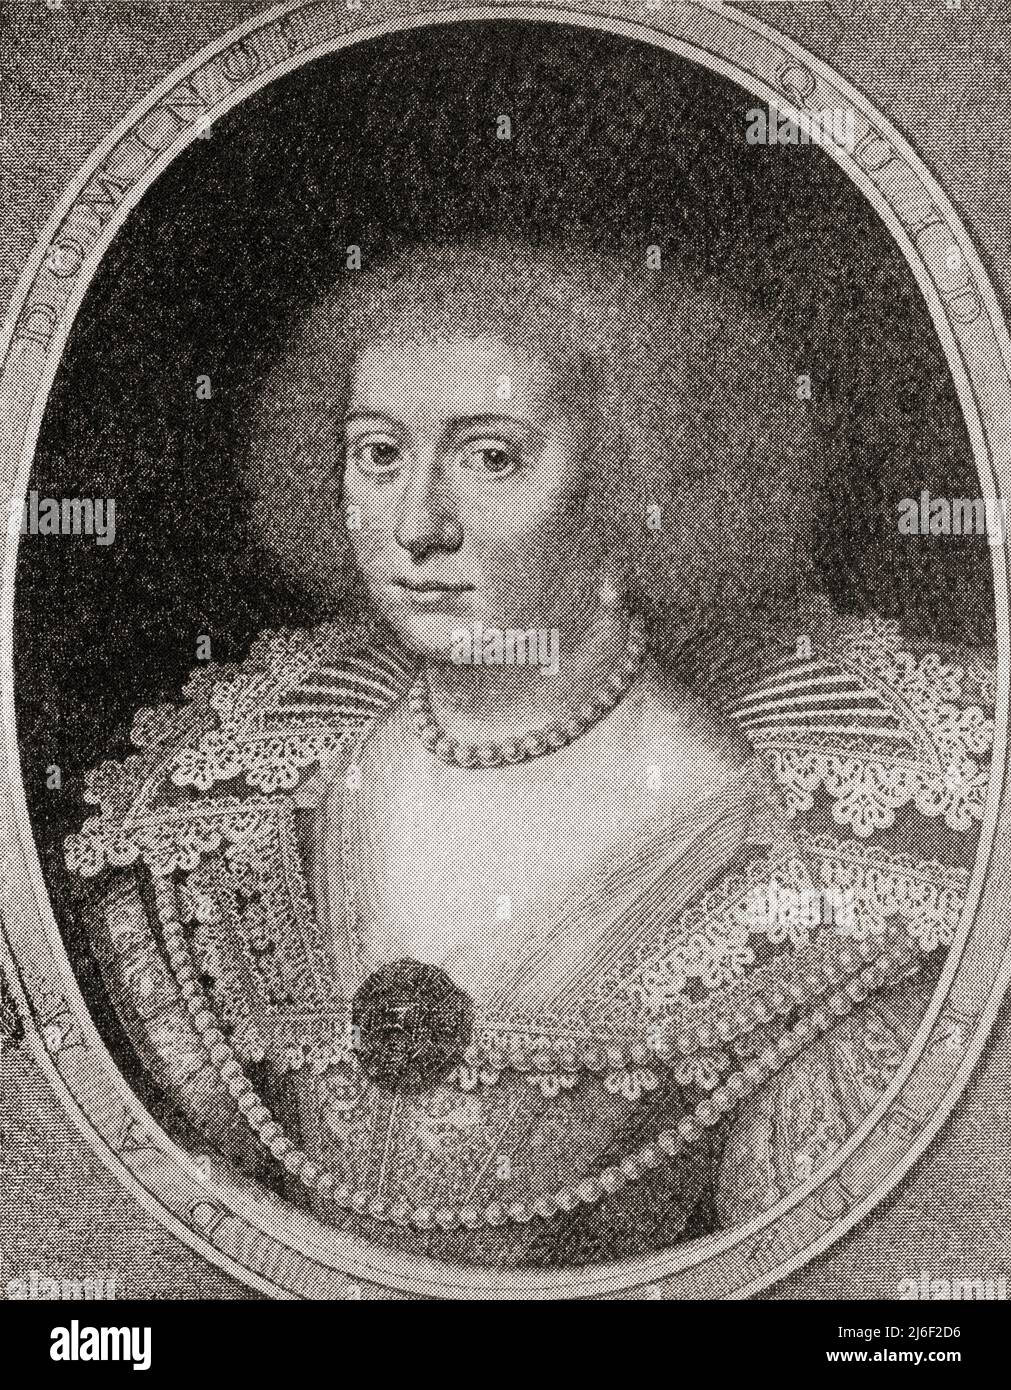 Amalia de Solms-Braunfels, 1602 – 1675. Princesa de Orange a través de su matrimonio con Frederick Henry, Príncipe de Orange. De Modes and Modes, publicado en 1935. Foto de stock